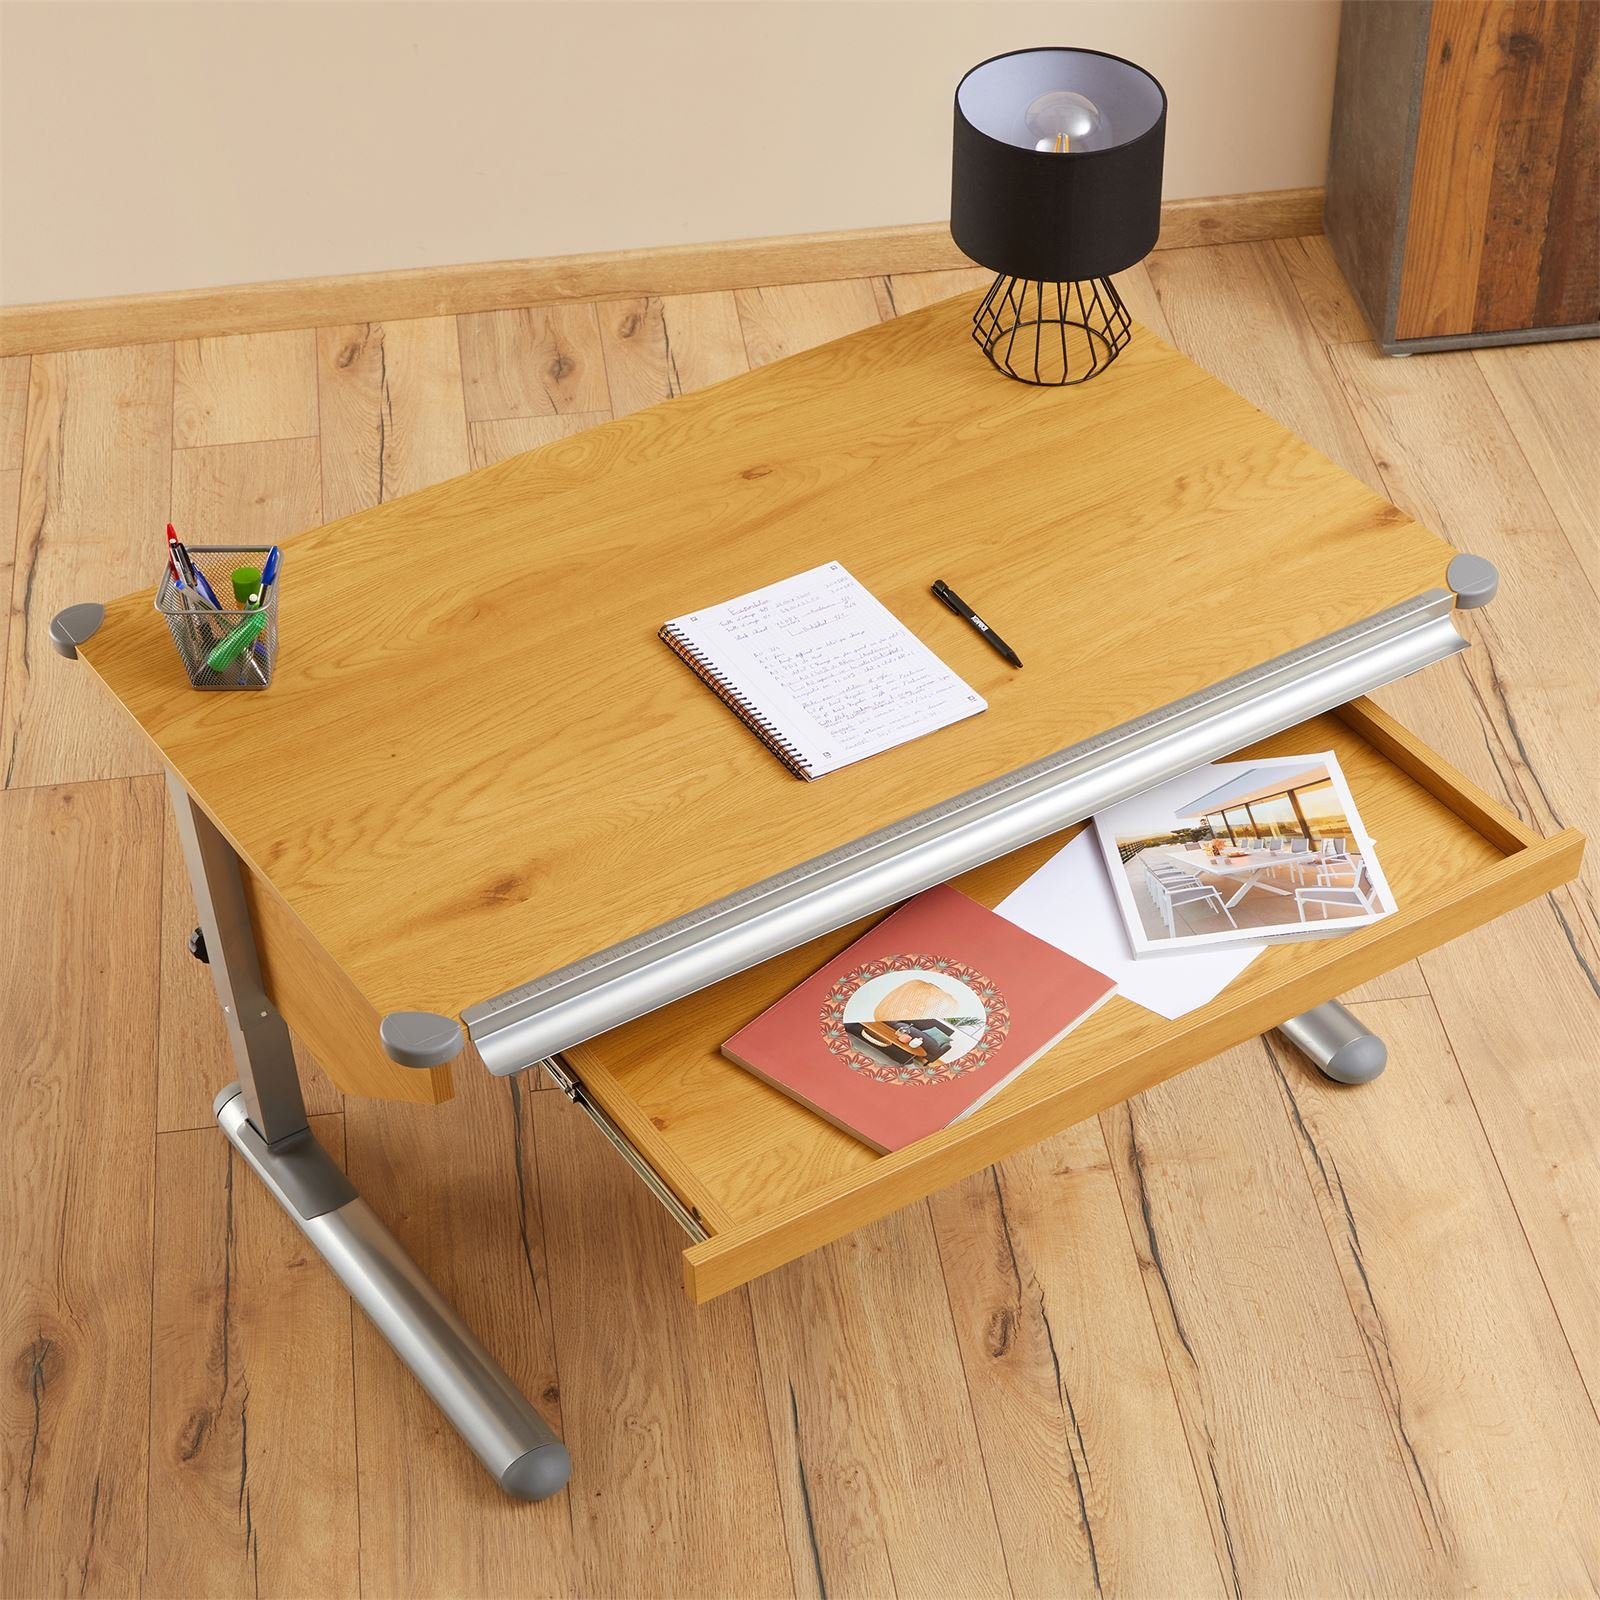 Kin höhenverstellbar für PHILIPP, Schublade Schreibtisch mit Kinderschreibtisch Kinderschreibtisch CARO-Möbel